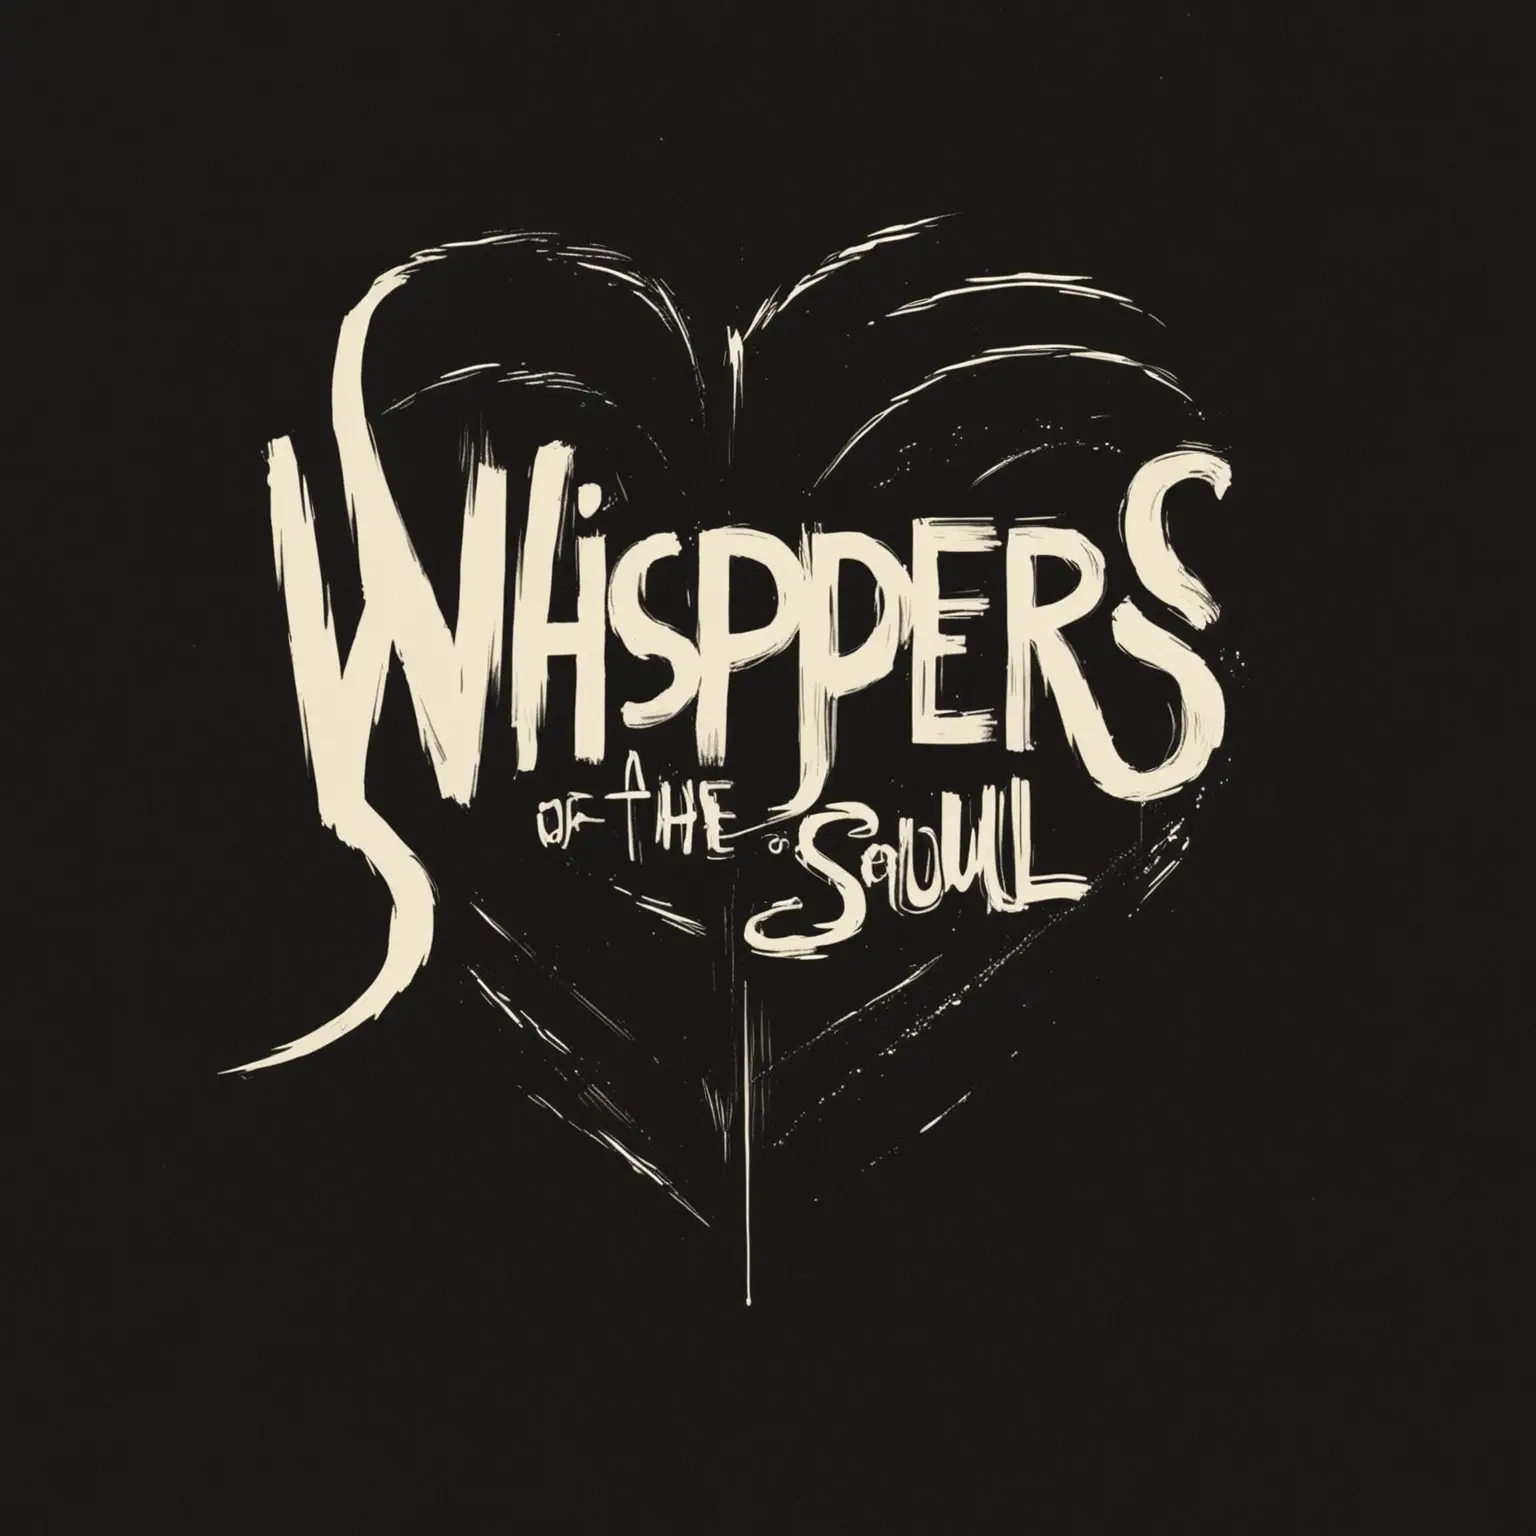 Genera la portada de un single titulado 'Whispers of the soul', en relacion al amor, con el estilo de Saul Bass